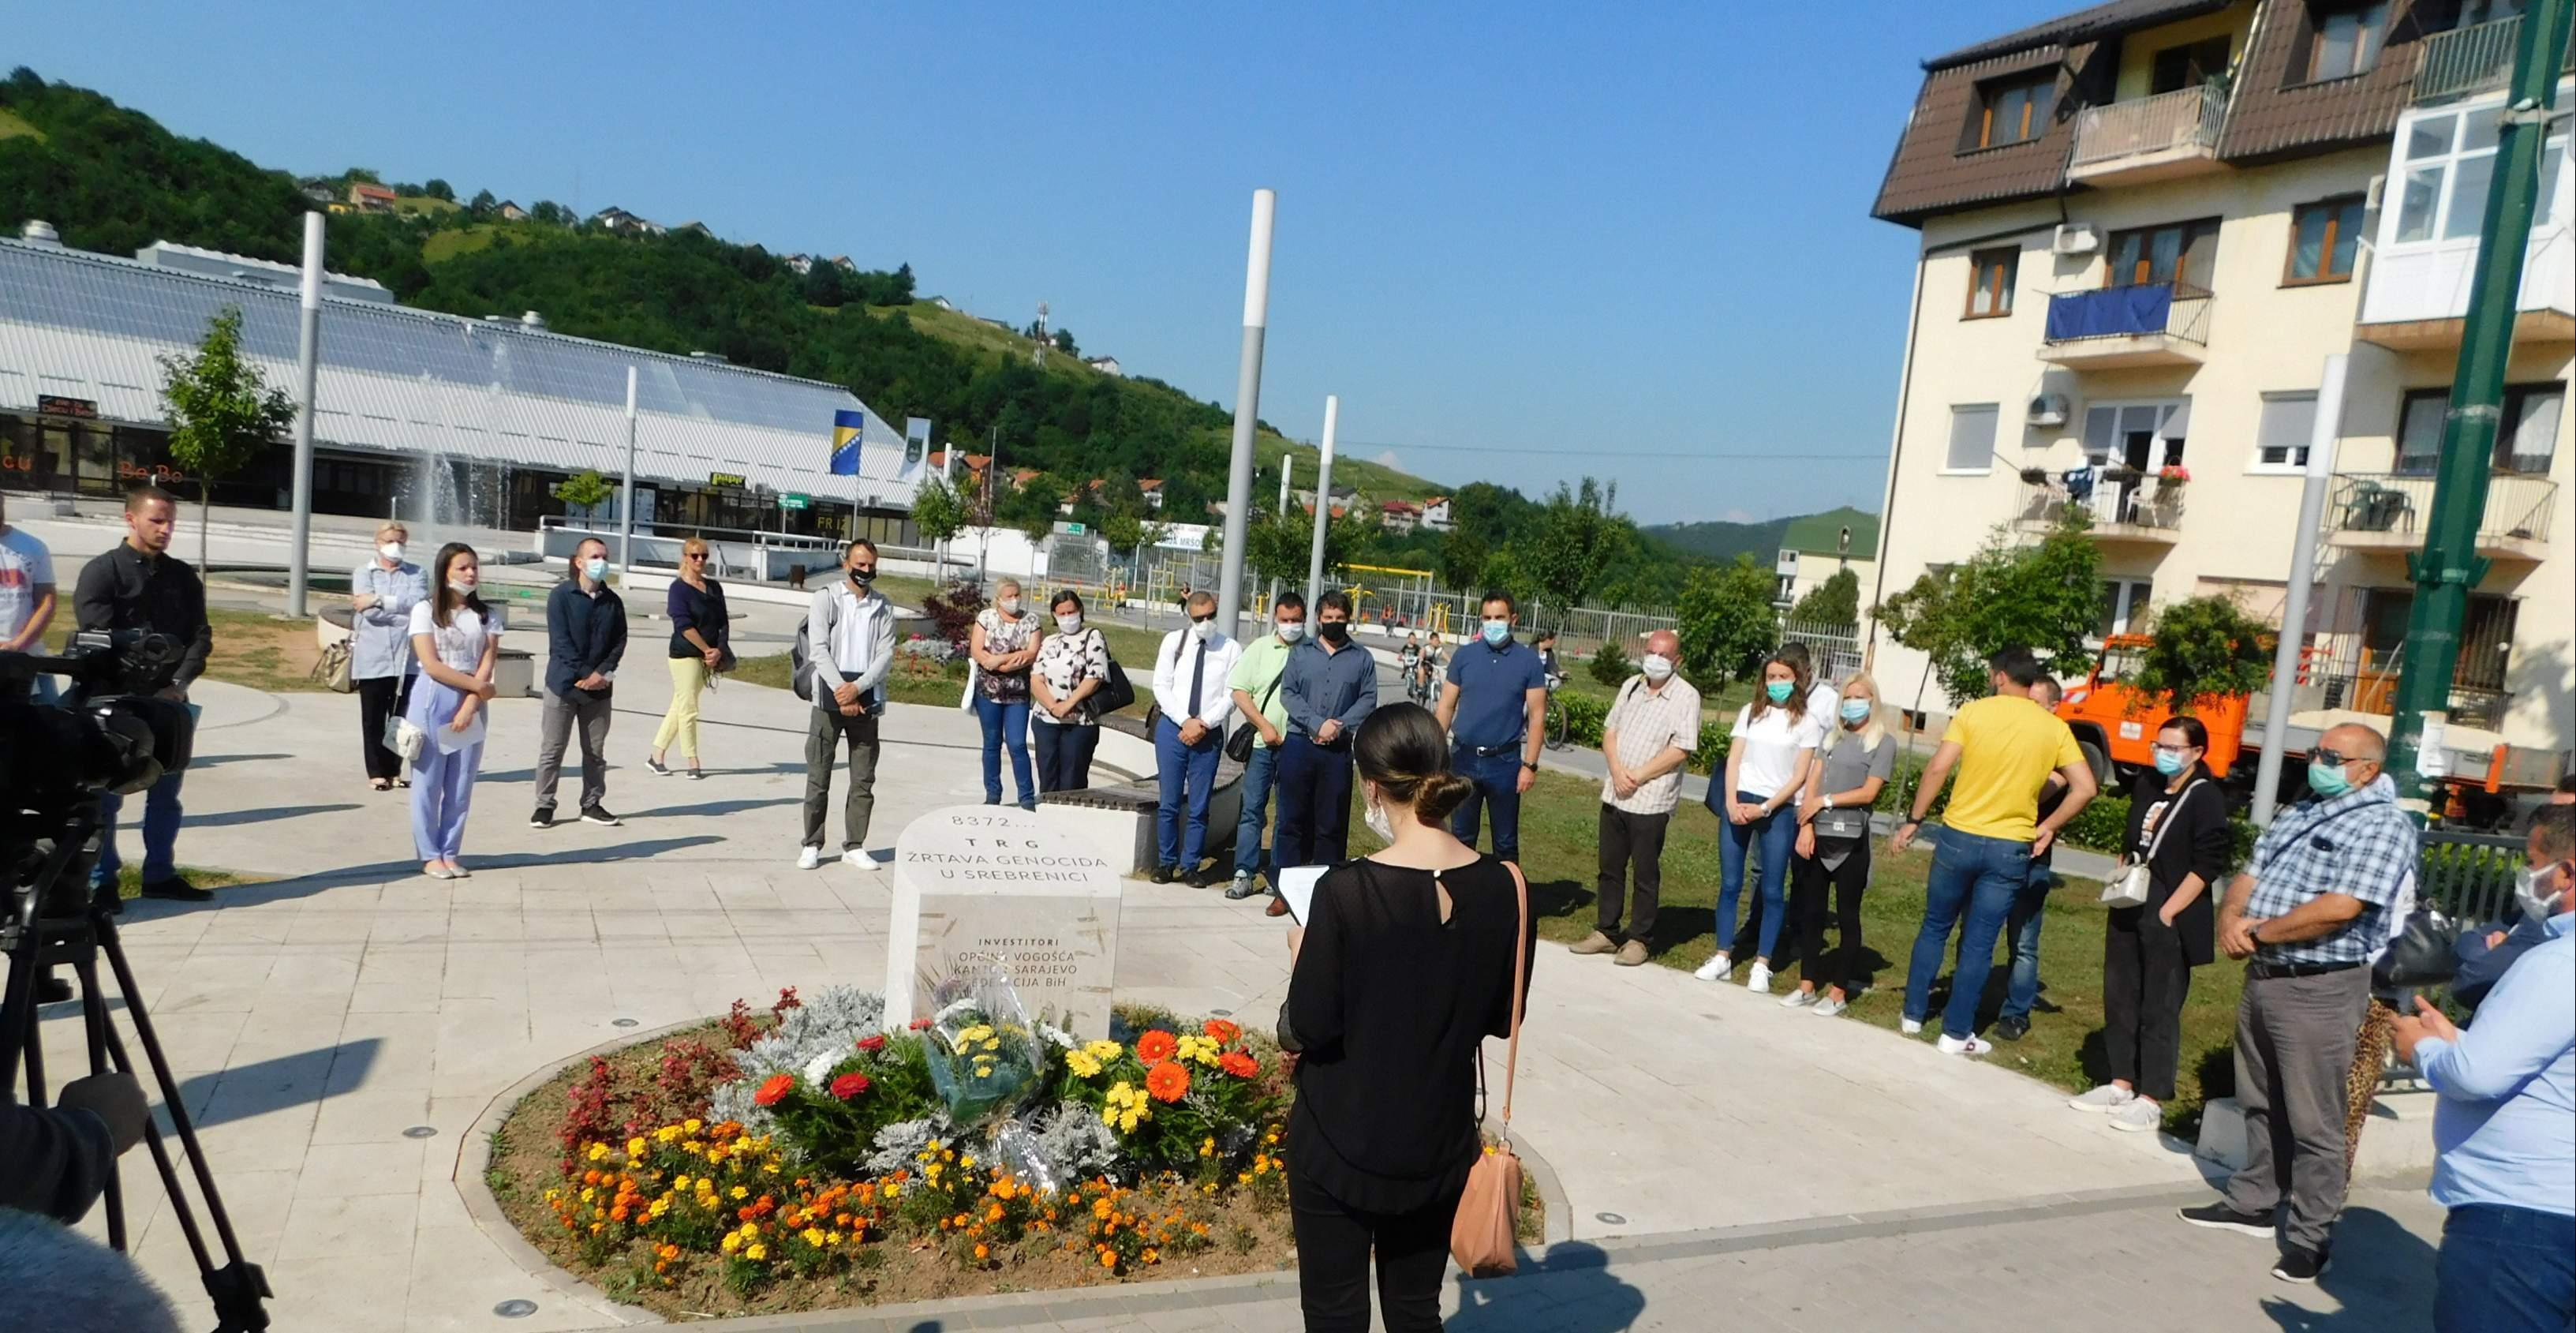 Odata počast žrtvama genocida u Srebrenici